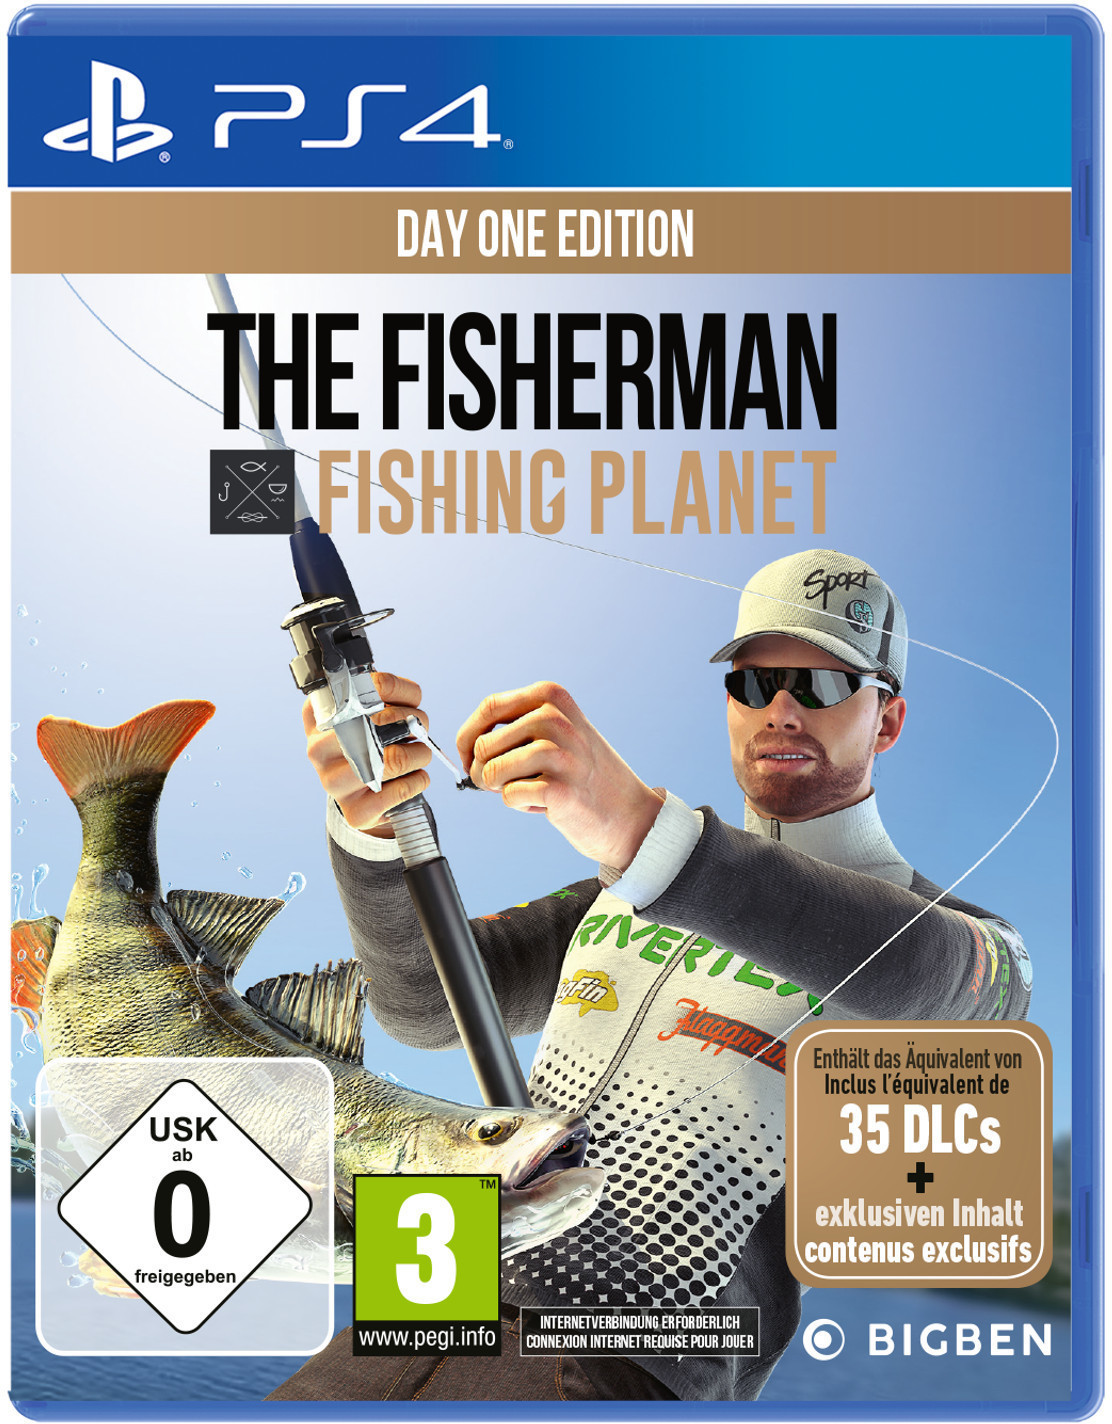 fishing planet vs the fisherman